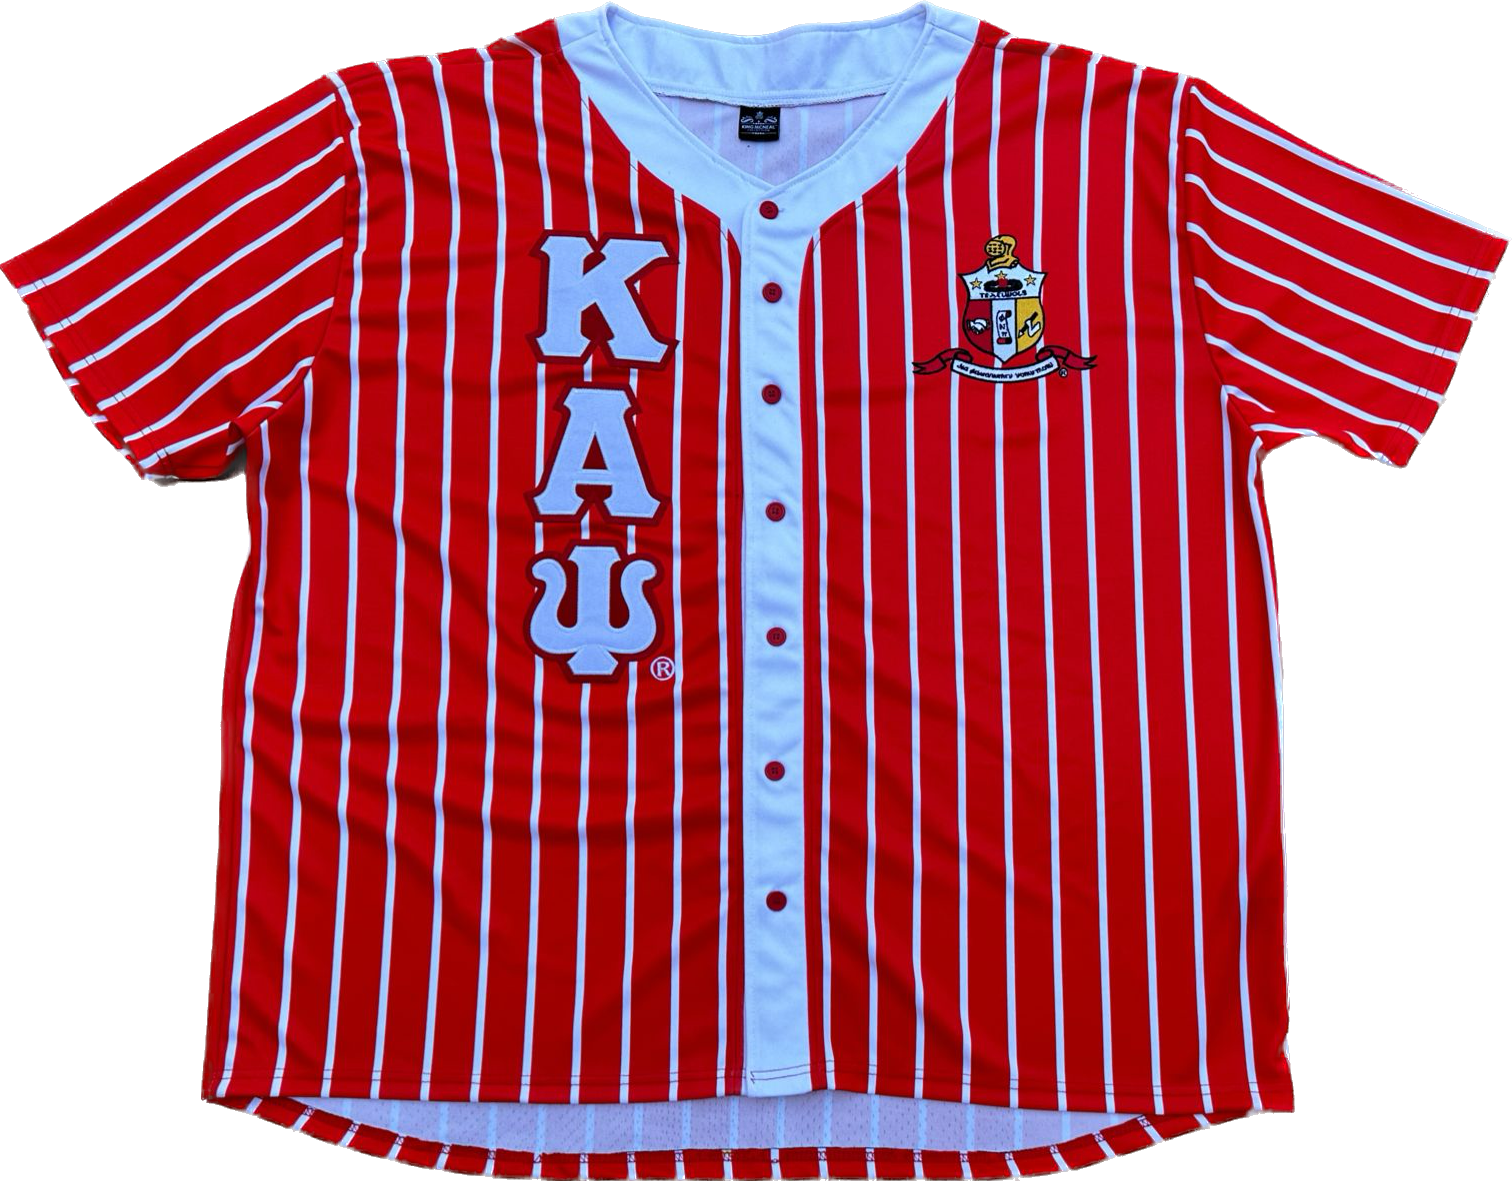 Kappa Red Pinstripe Button Up Baseball Jersey